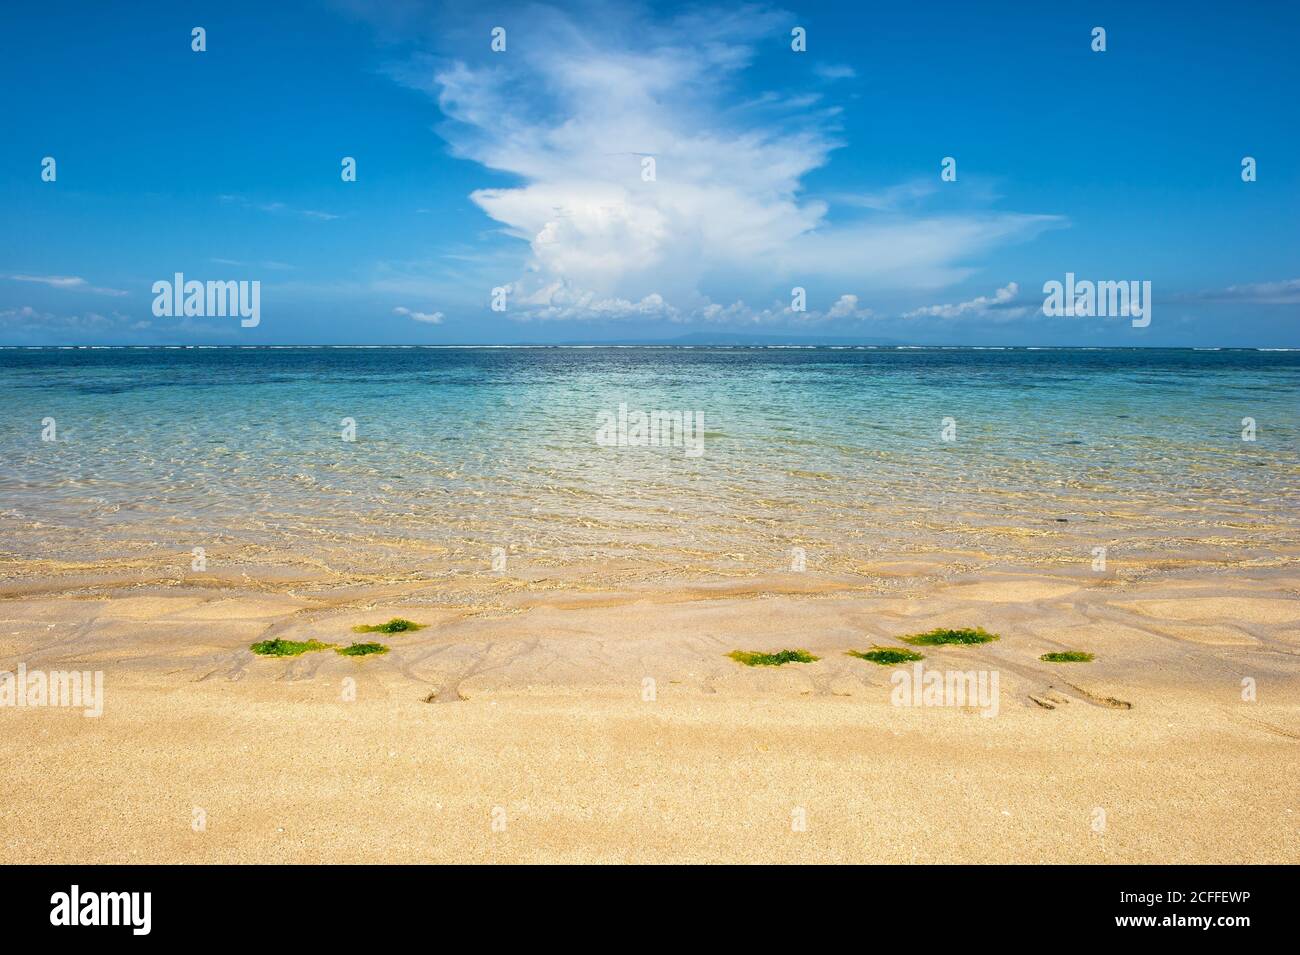 Bleu eau de mer, ciel nuageux, plage de sable. Paysage de voyage d'été Banque D'Images